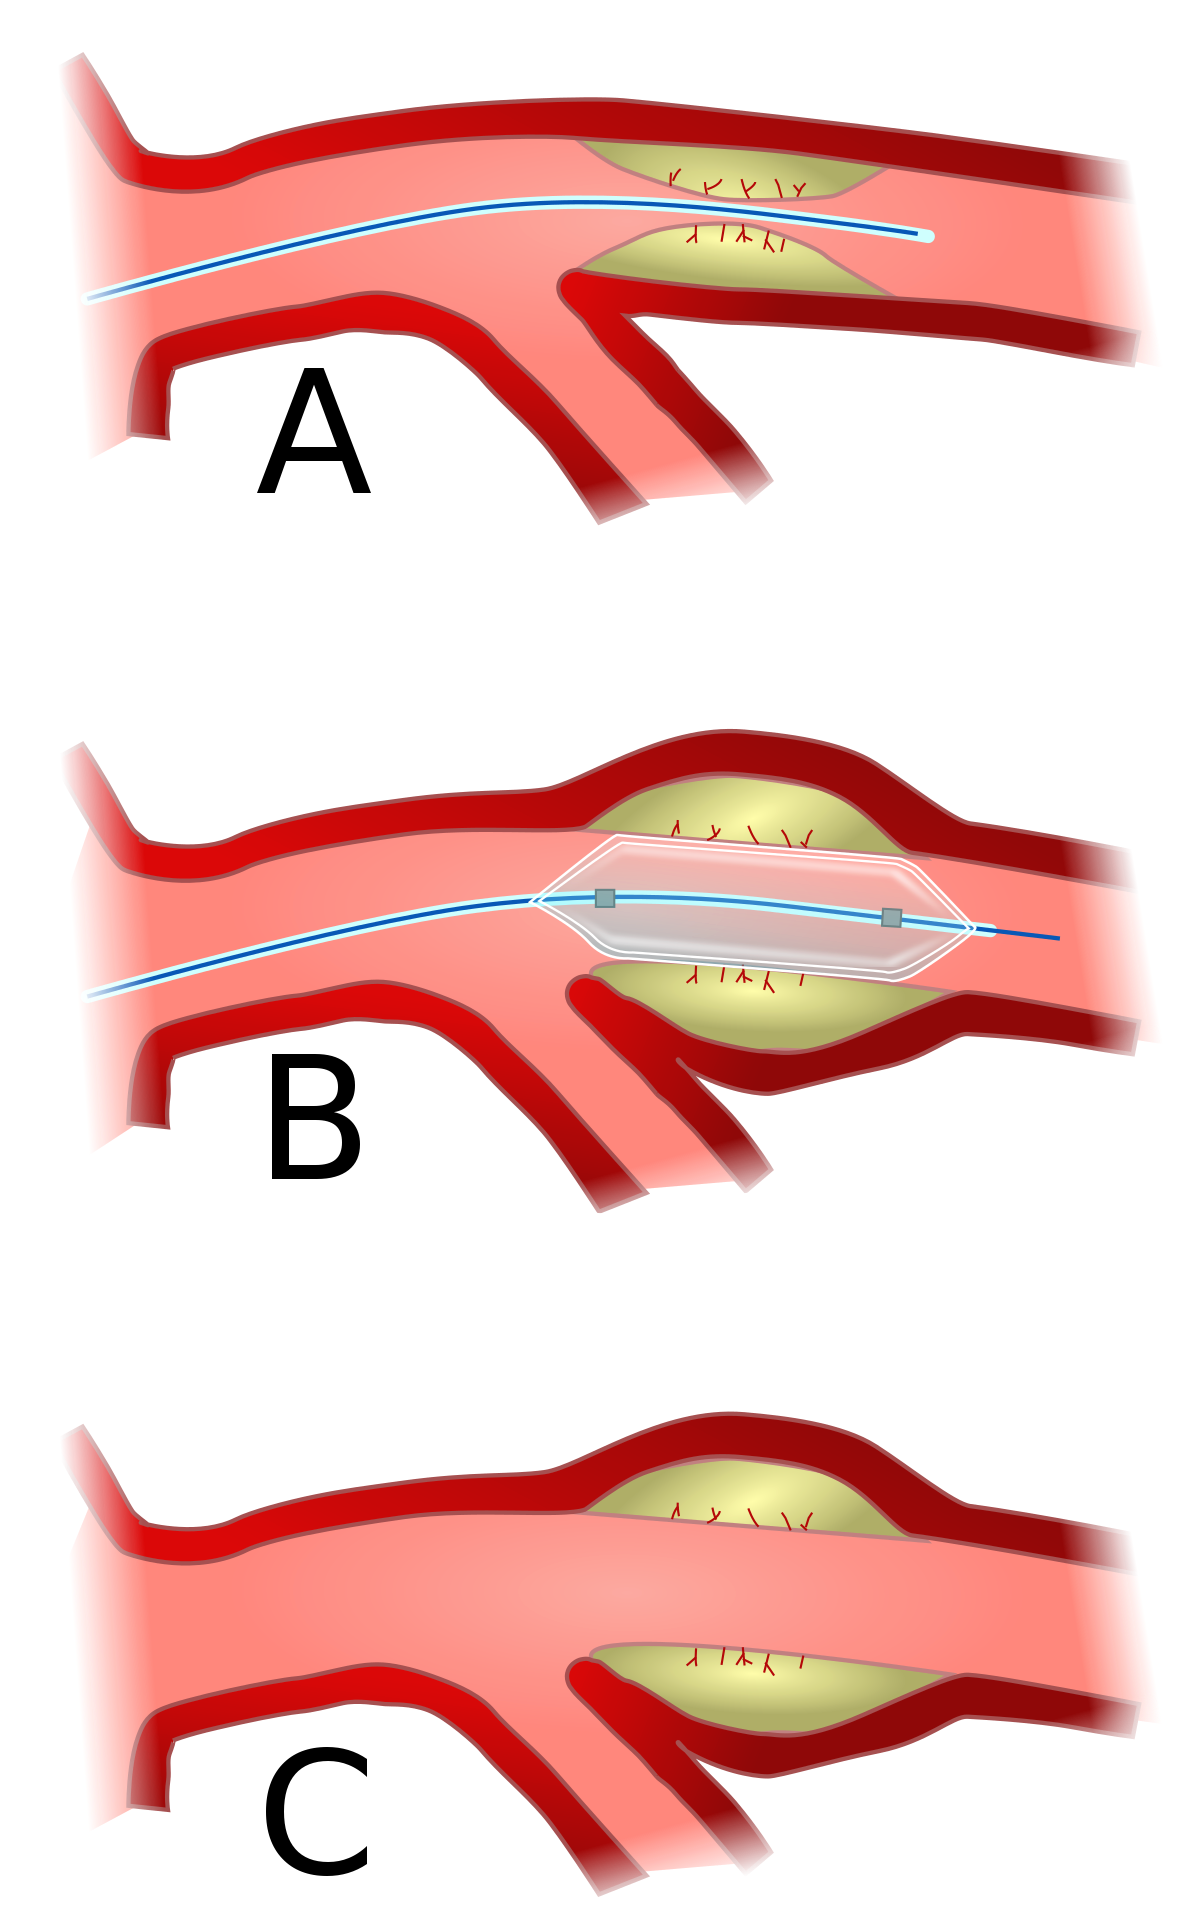 Angioplasty - Wikipedia